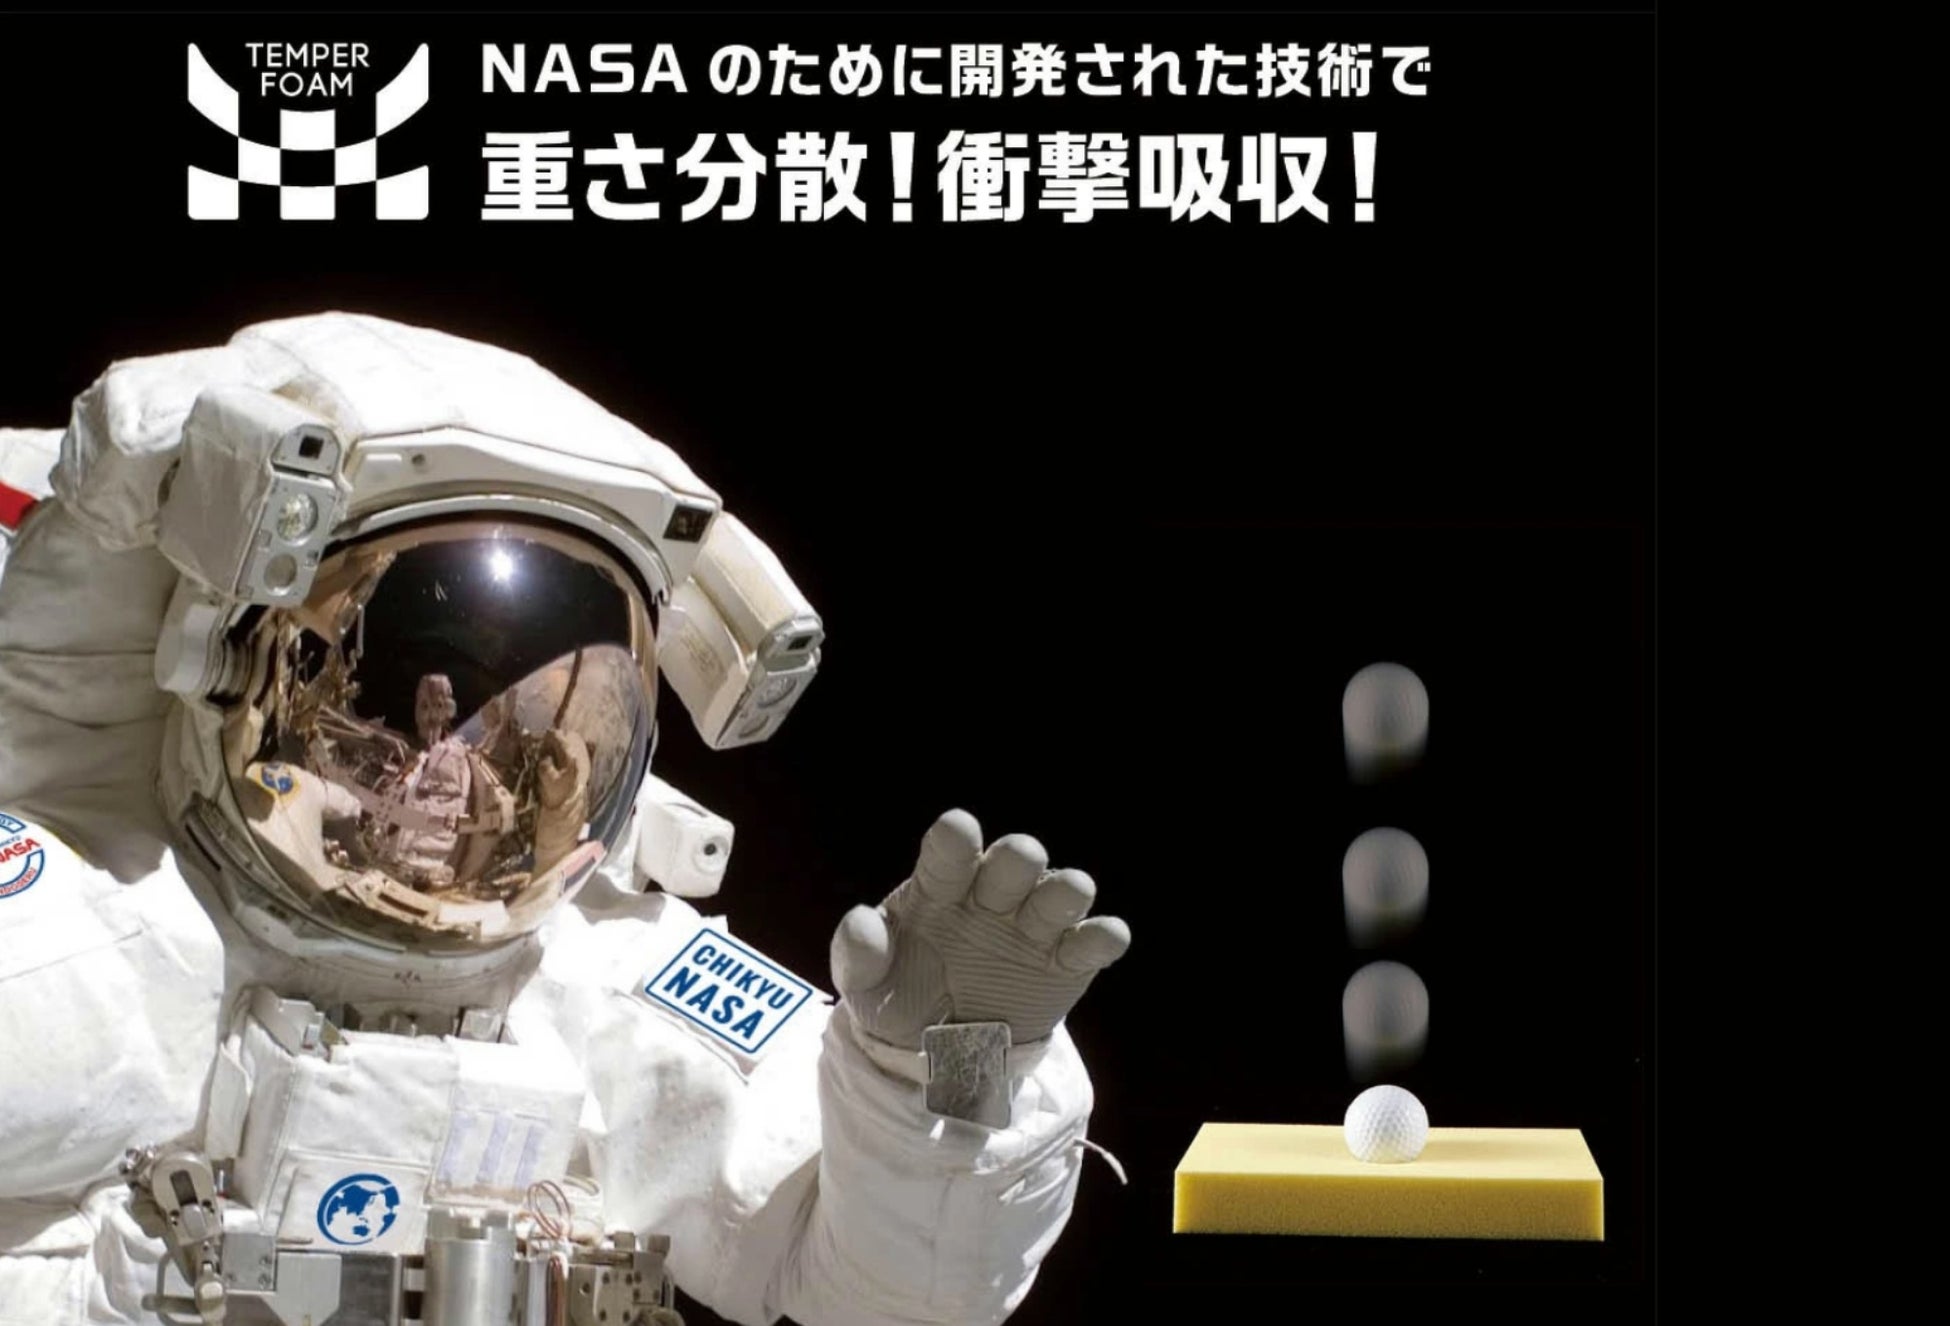 【大阪】阪急うめだ本店にて「地球NASAランドセル® 展示受注会」を開催いたします。